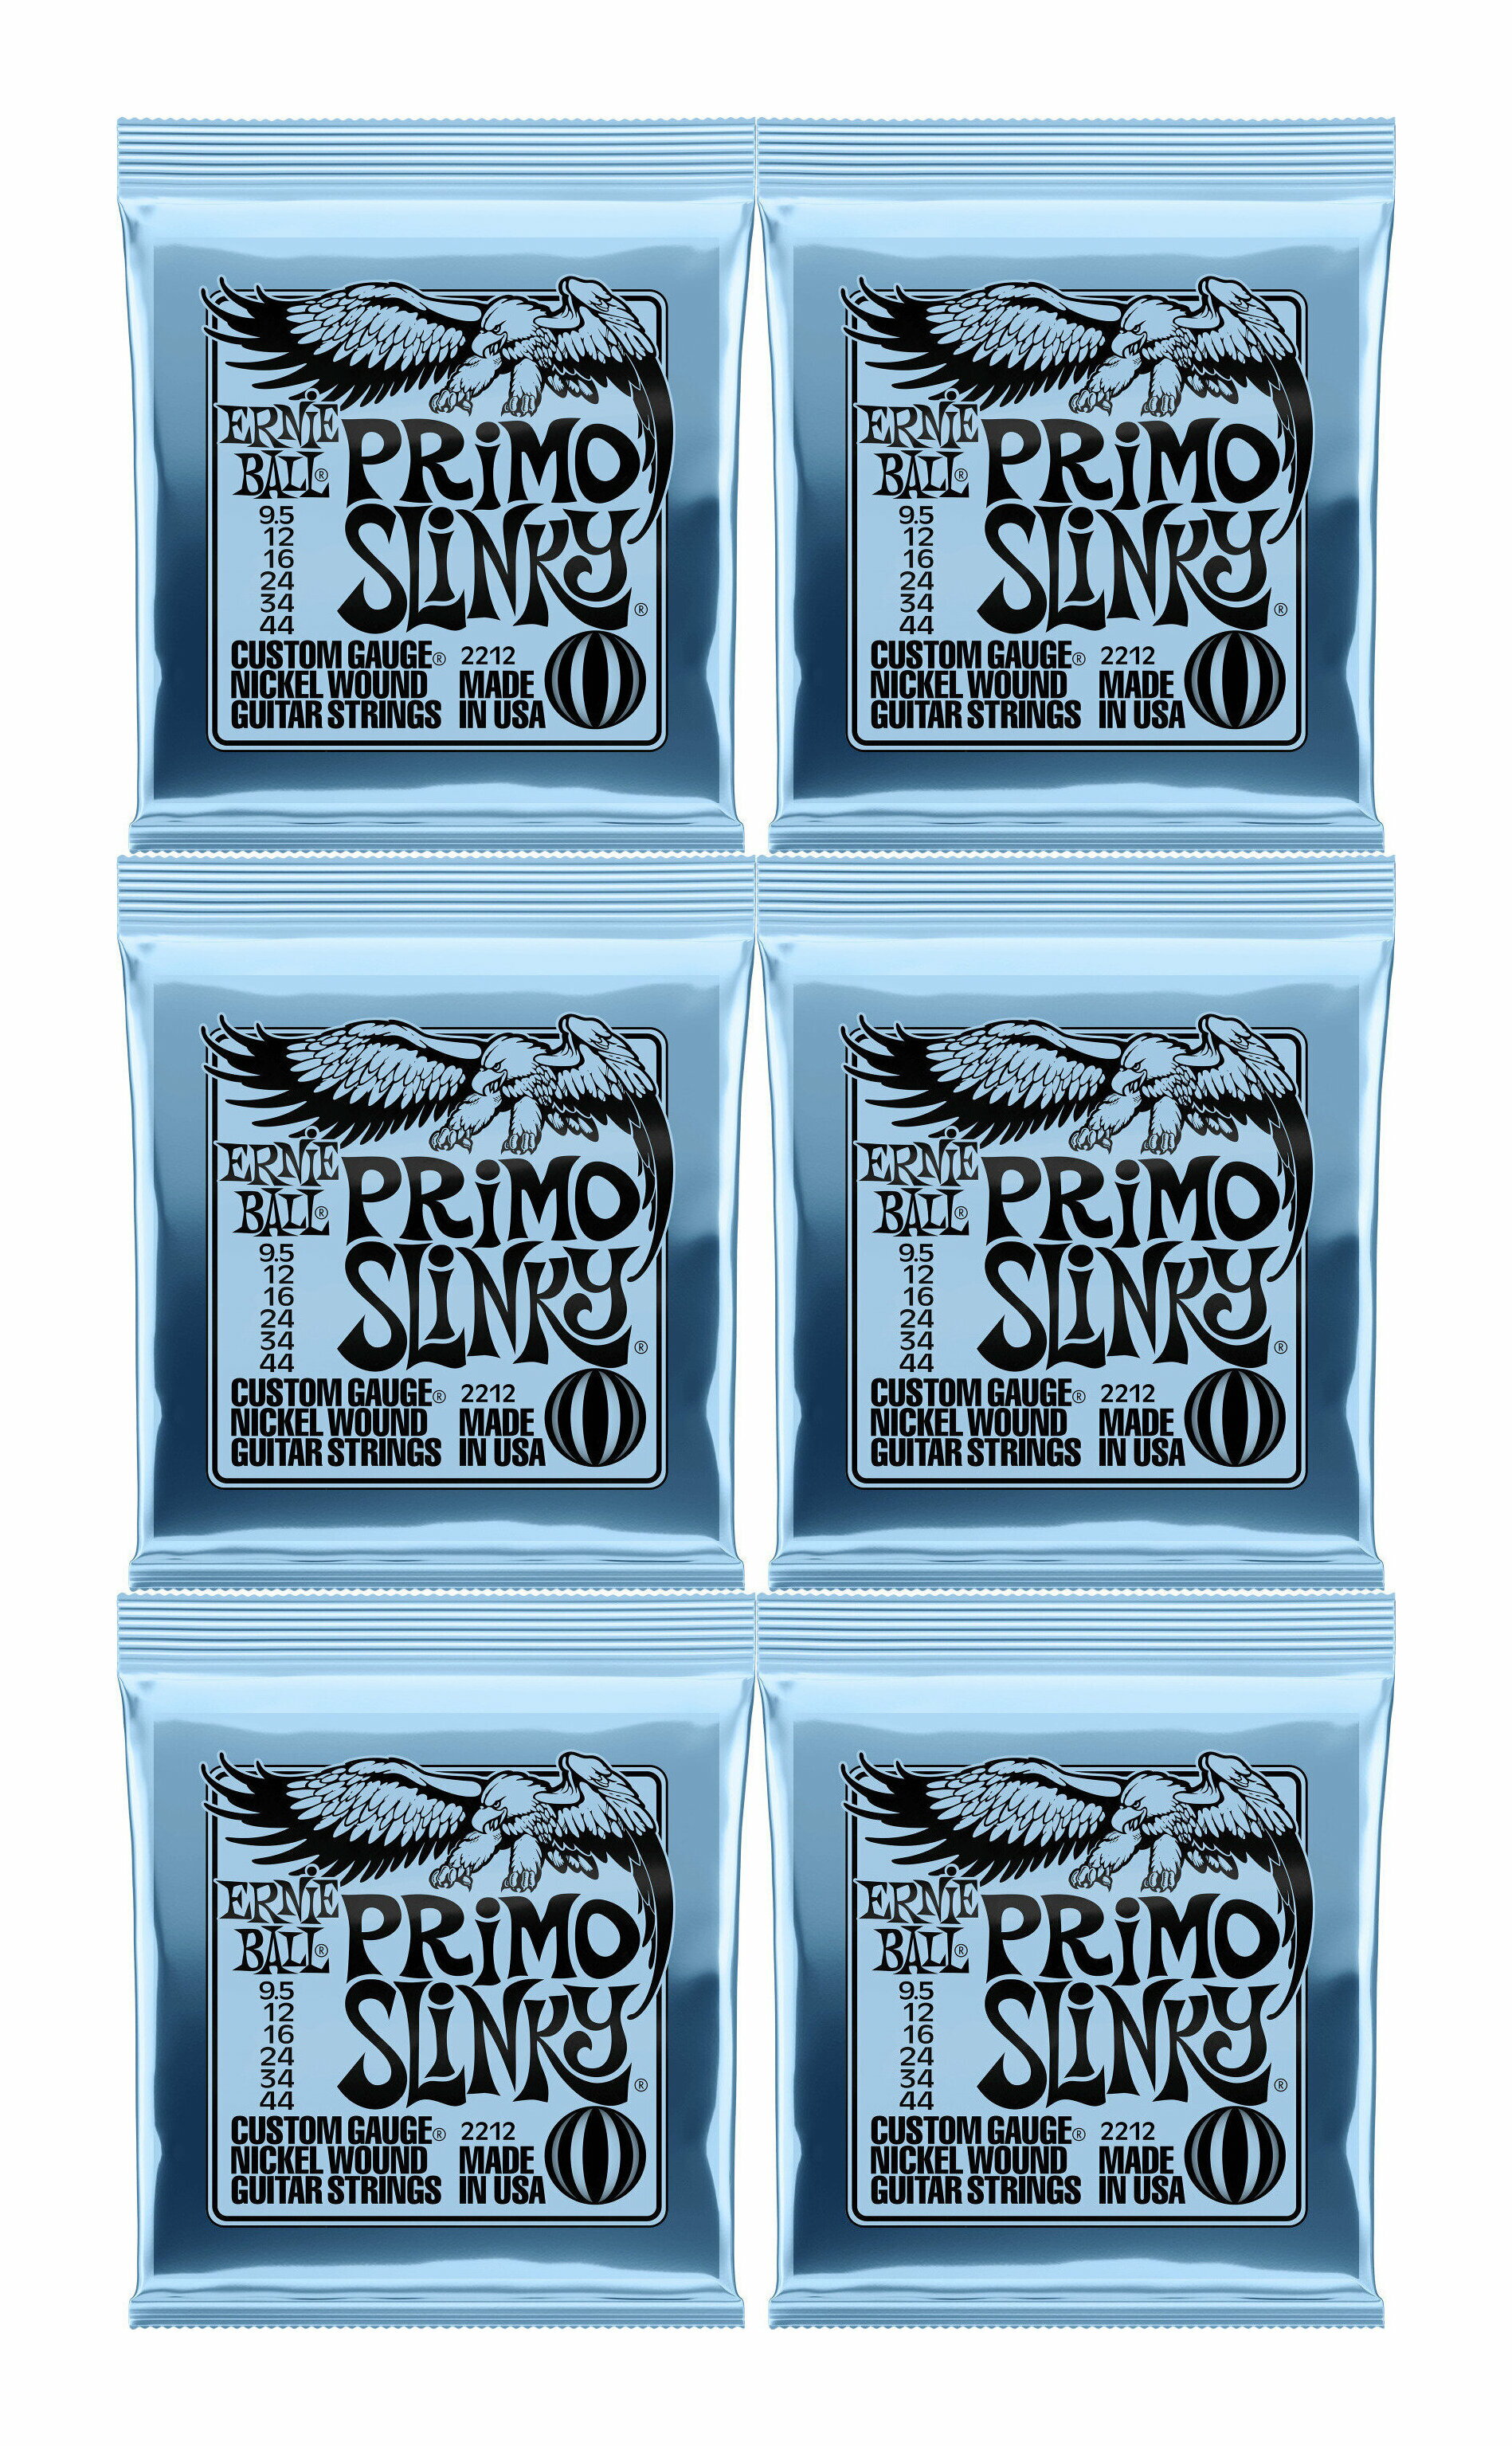 【メール便 送料無料 代引不可】【6セット】ERNIE BALL アーニーボール 2212 9.5-44 PRIMO SLINKY エレキギター弦